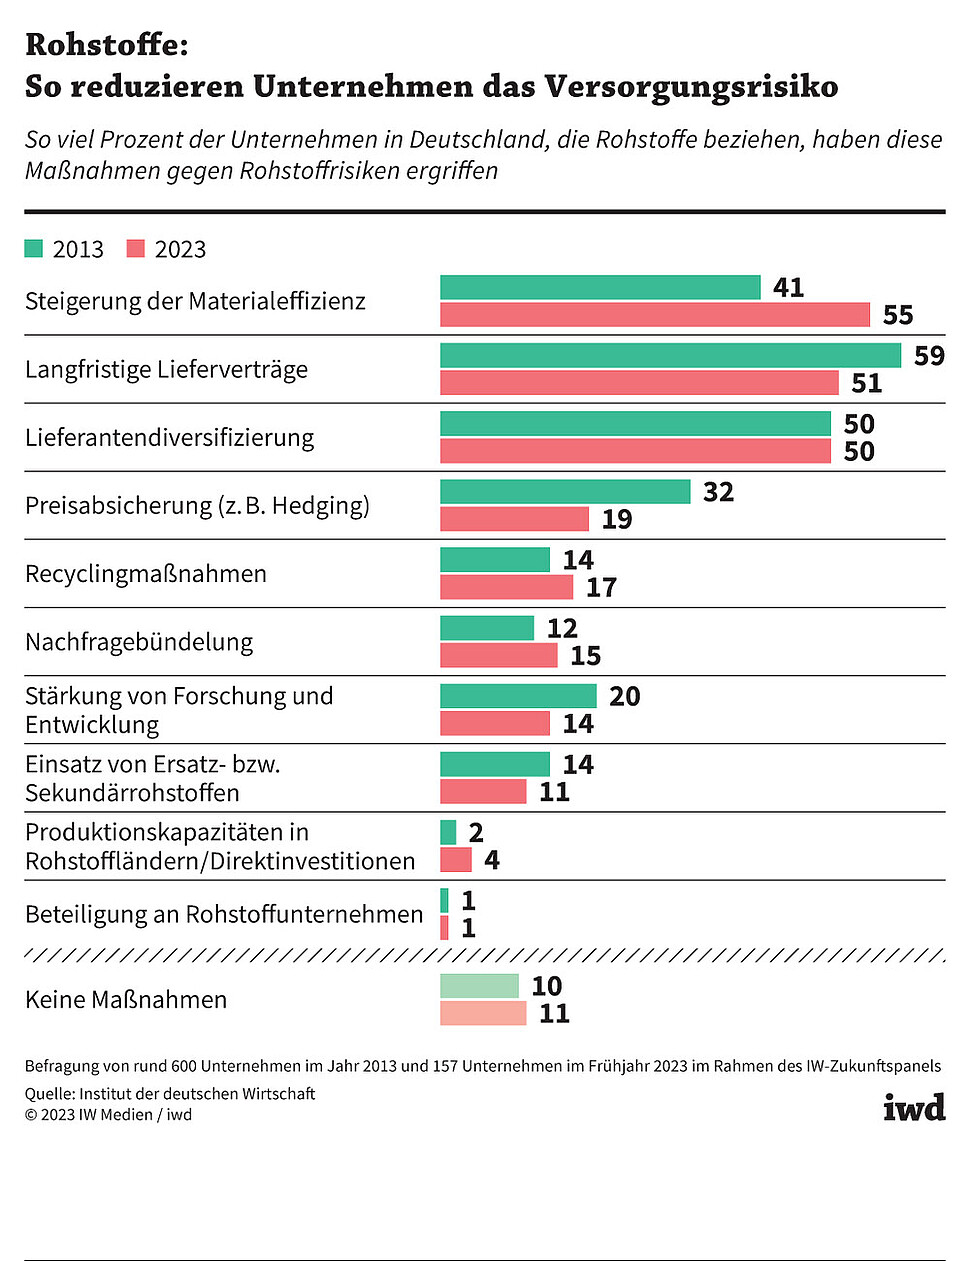 So viel Prozent der Unternehmen in Deutschland, die Rohstoffe beziehen, ergreifen diese Maßnahmen gegen Rohstoffrisiken